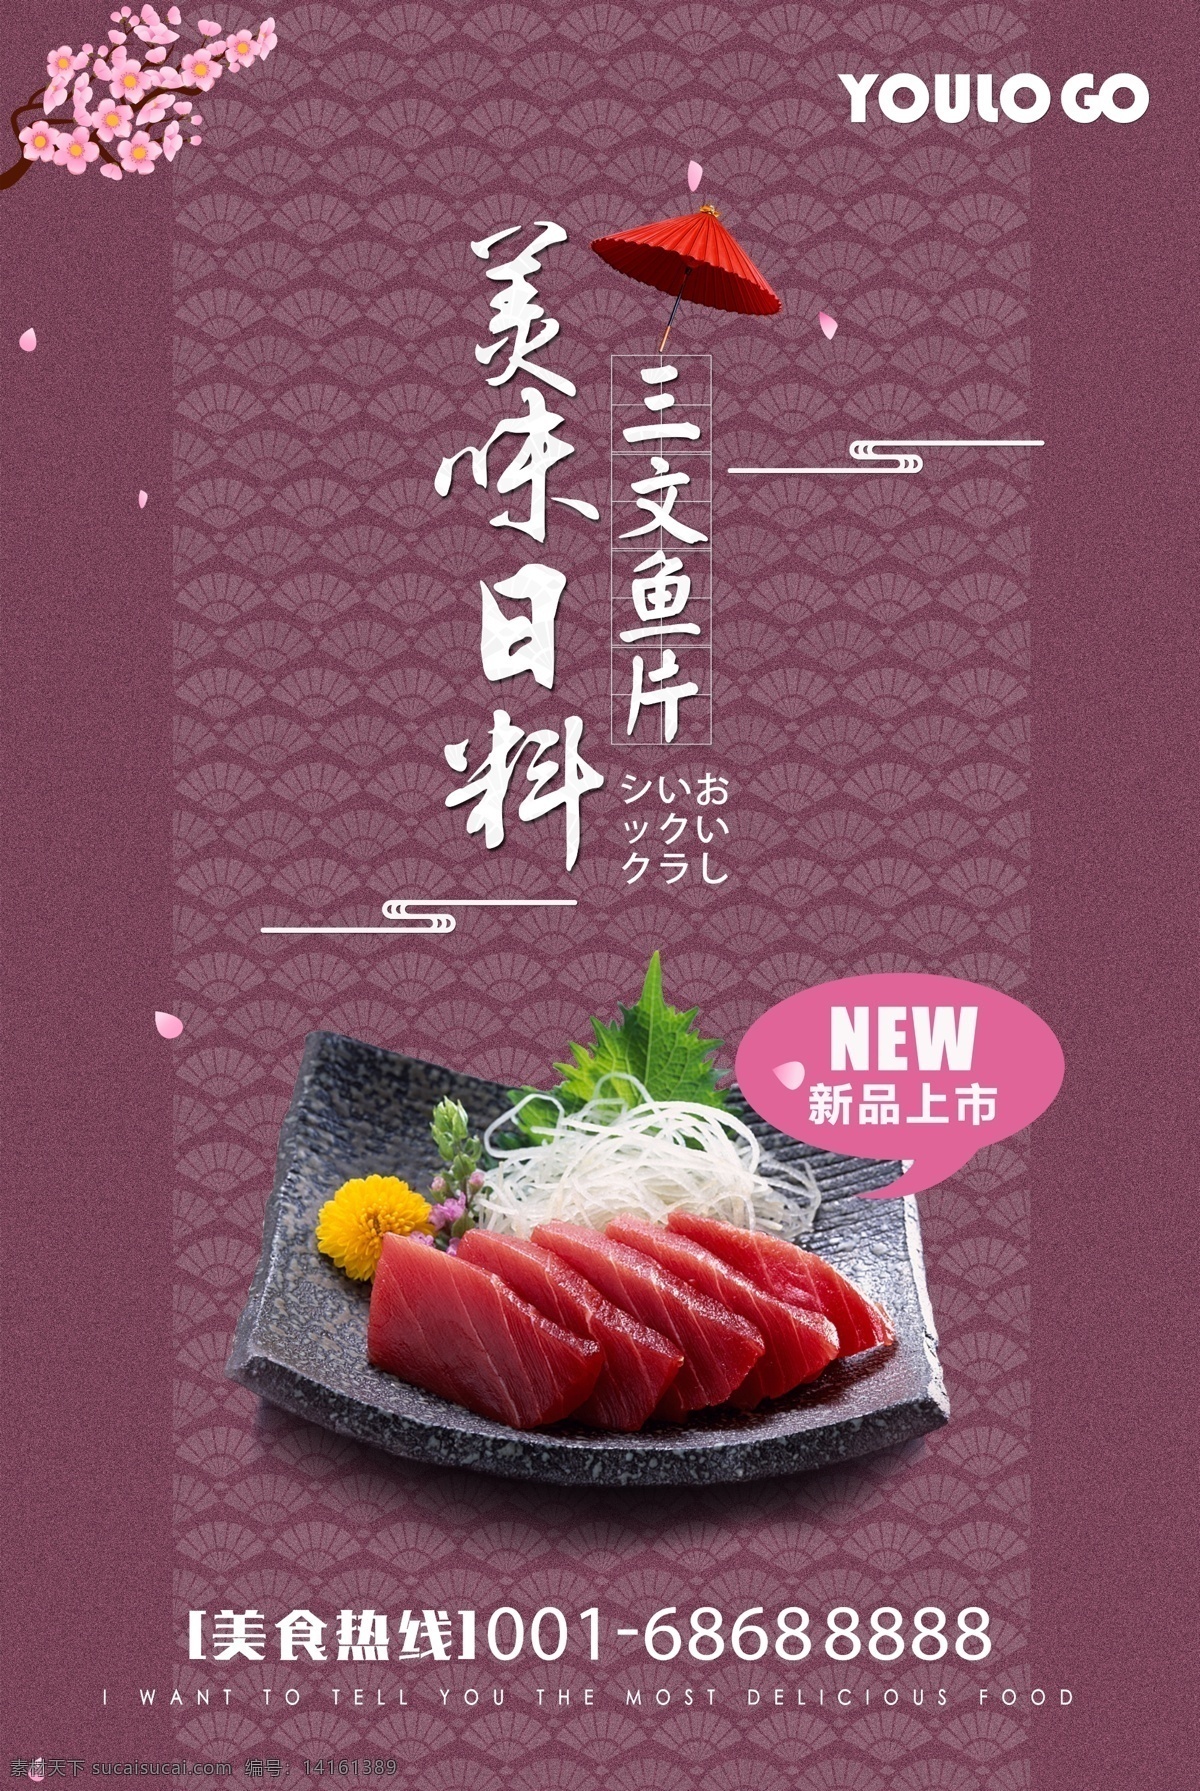 日料 日式 三文鱼 海报 日式料理 分层